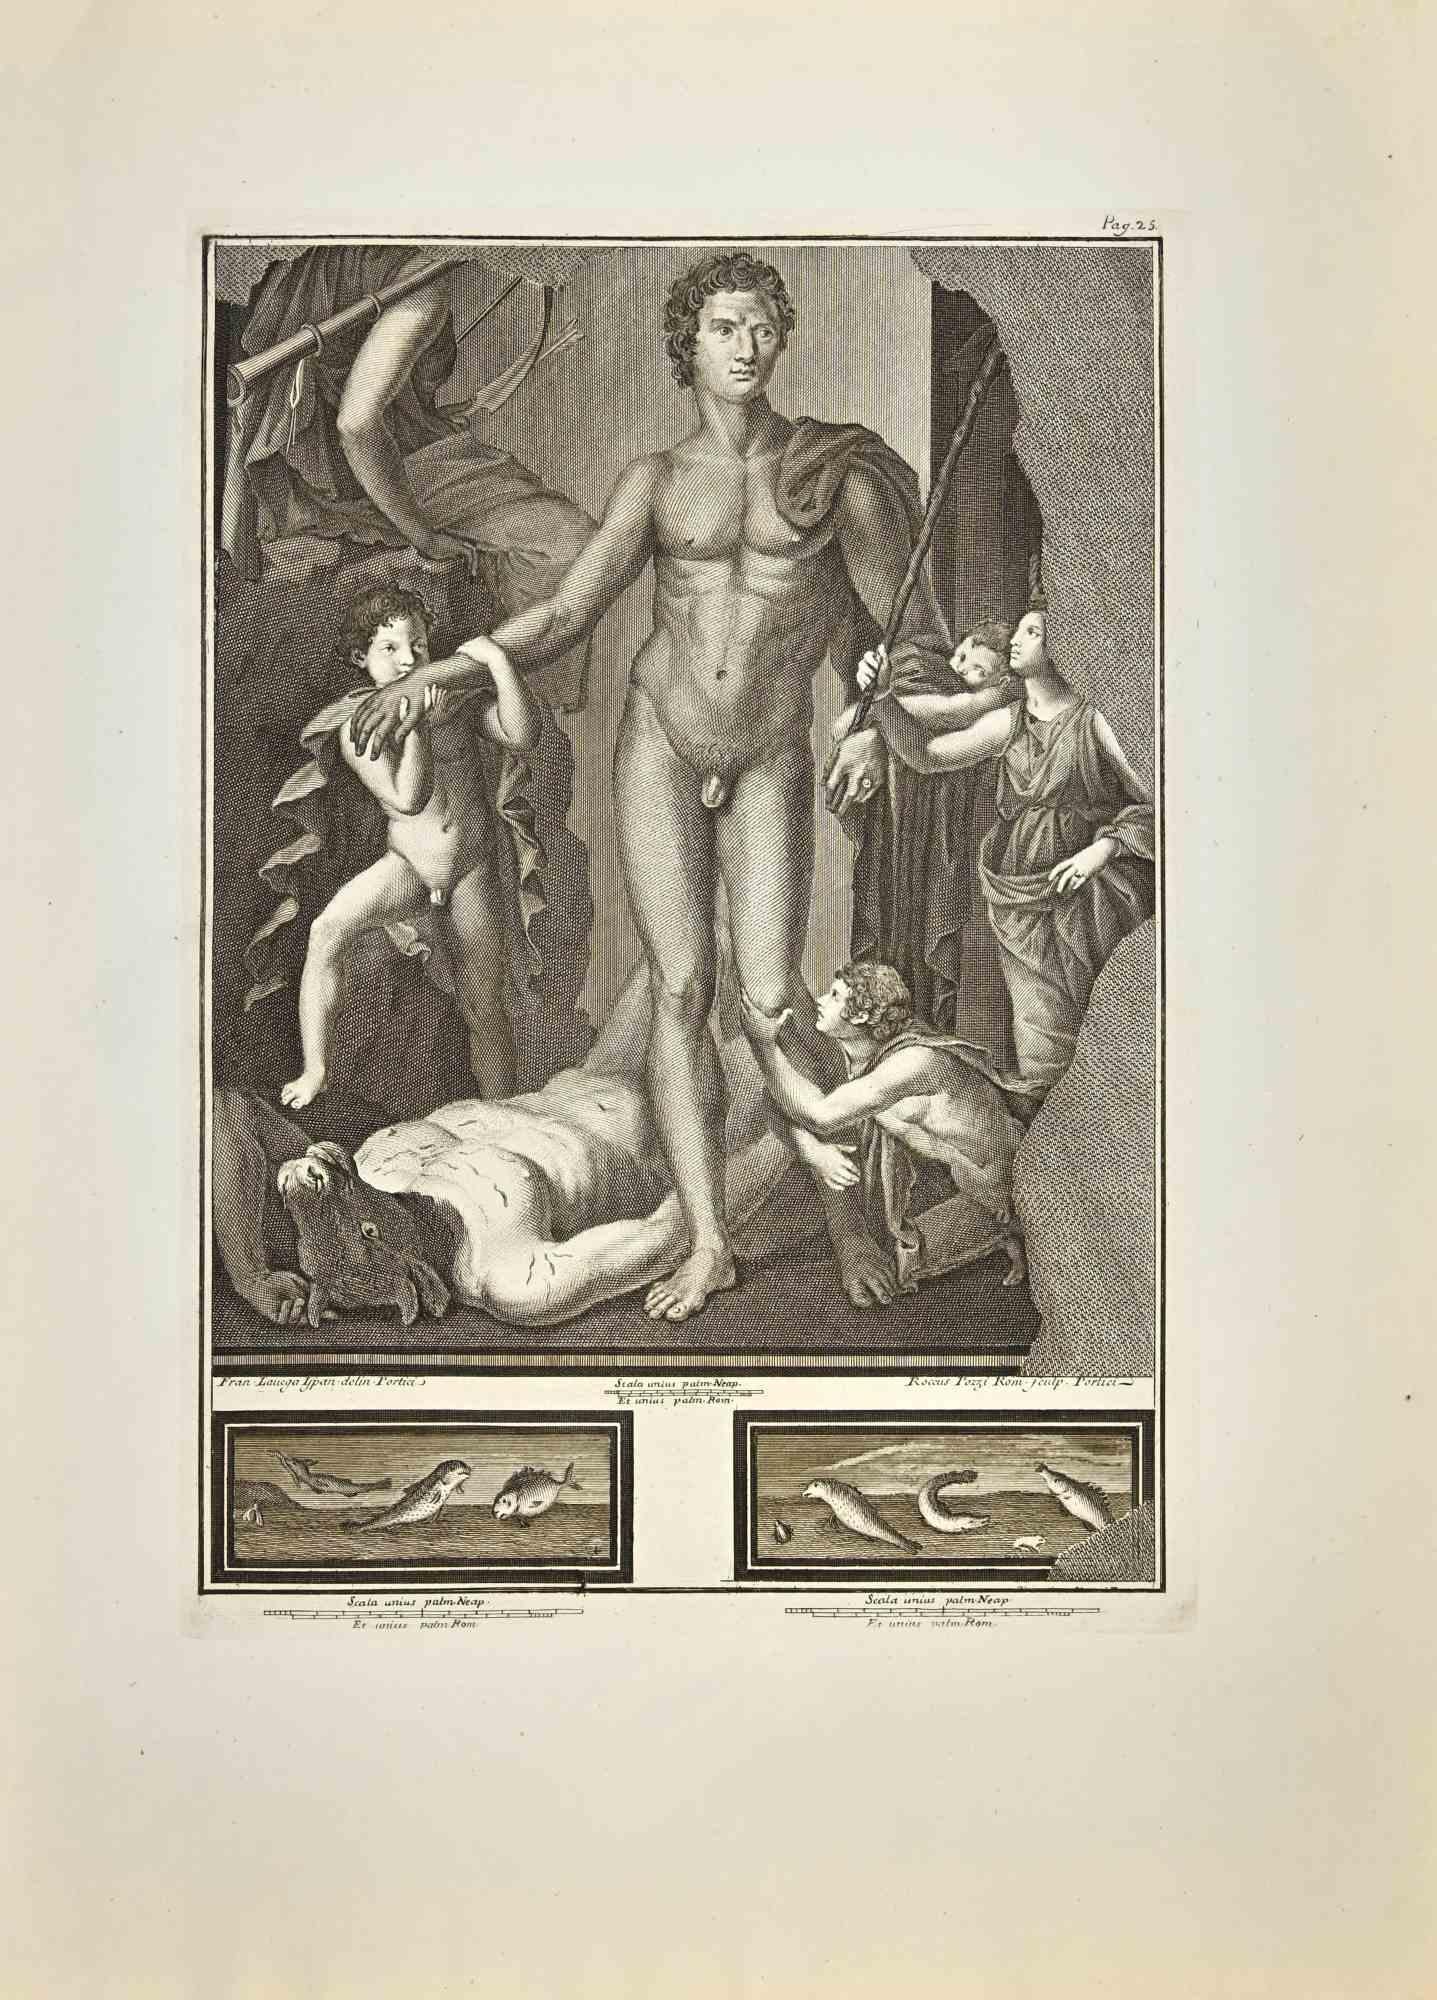 Theseus besiegt den Minotaurus aus den "Altertümern von Herculaneum" ist eine Radierung auf Papier von Francesco Lavega aus dem 18. Jahrhundert.

Signiert auf der Platte.

Guter Zustand mit einigen Faltungen aufgrund der Zeit.

Die Radierung gehört